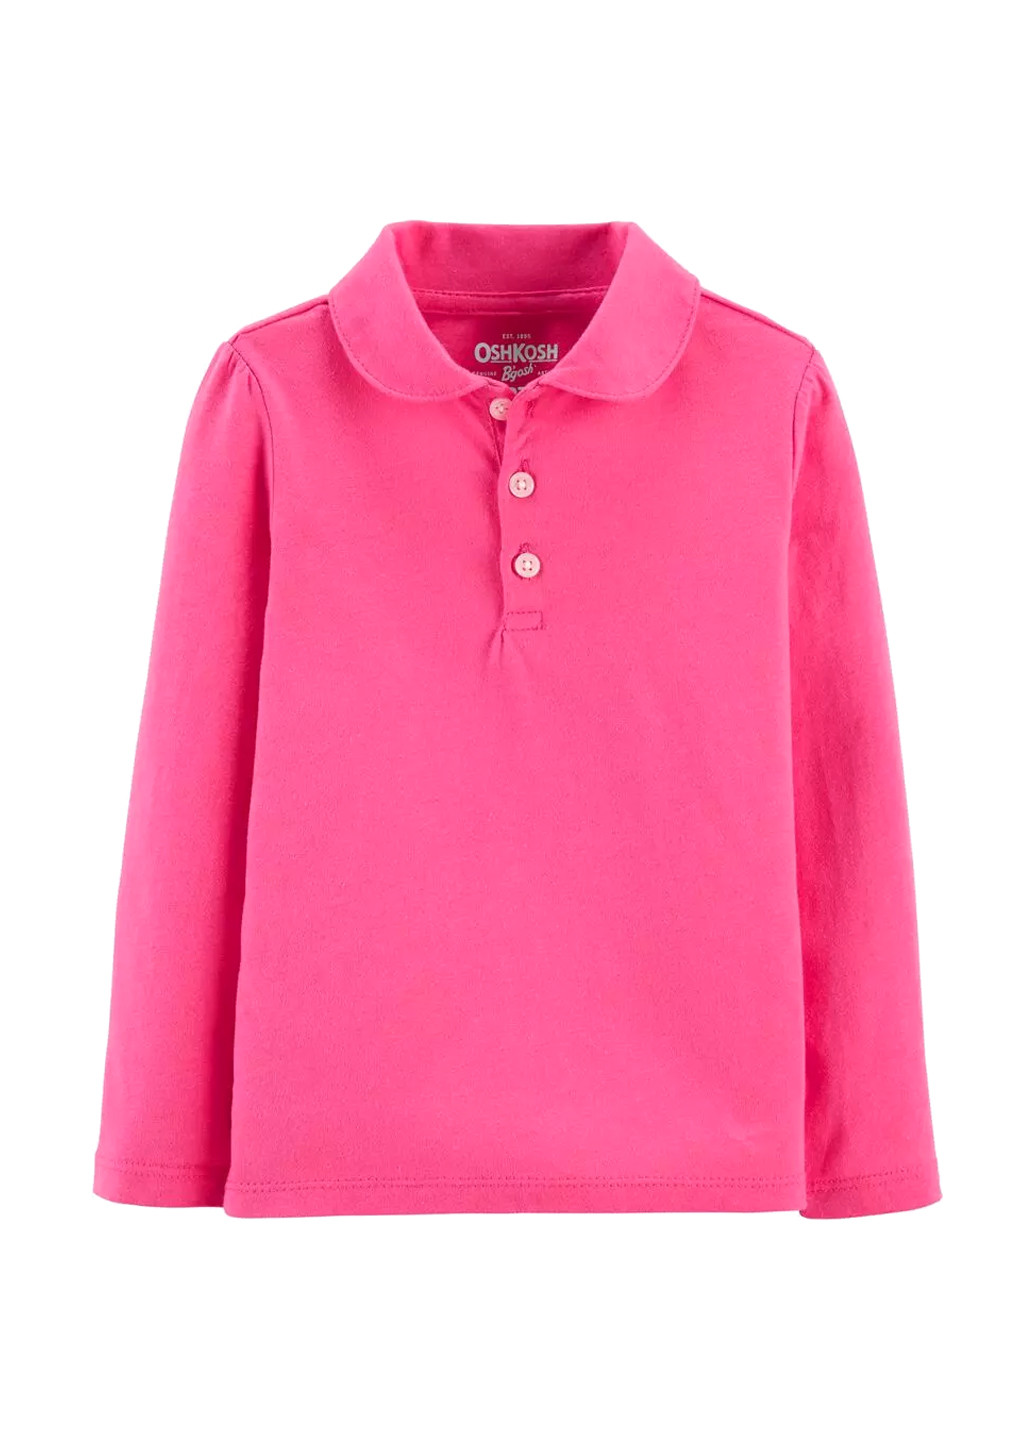 Розовая детская футболка-поло для девочки OshKosh однотонная